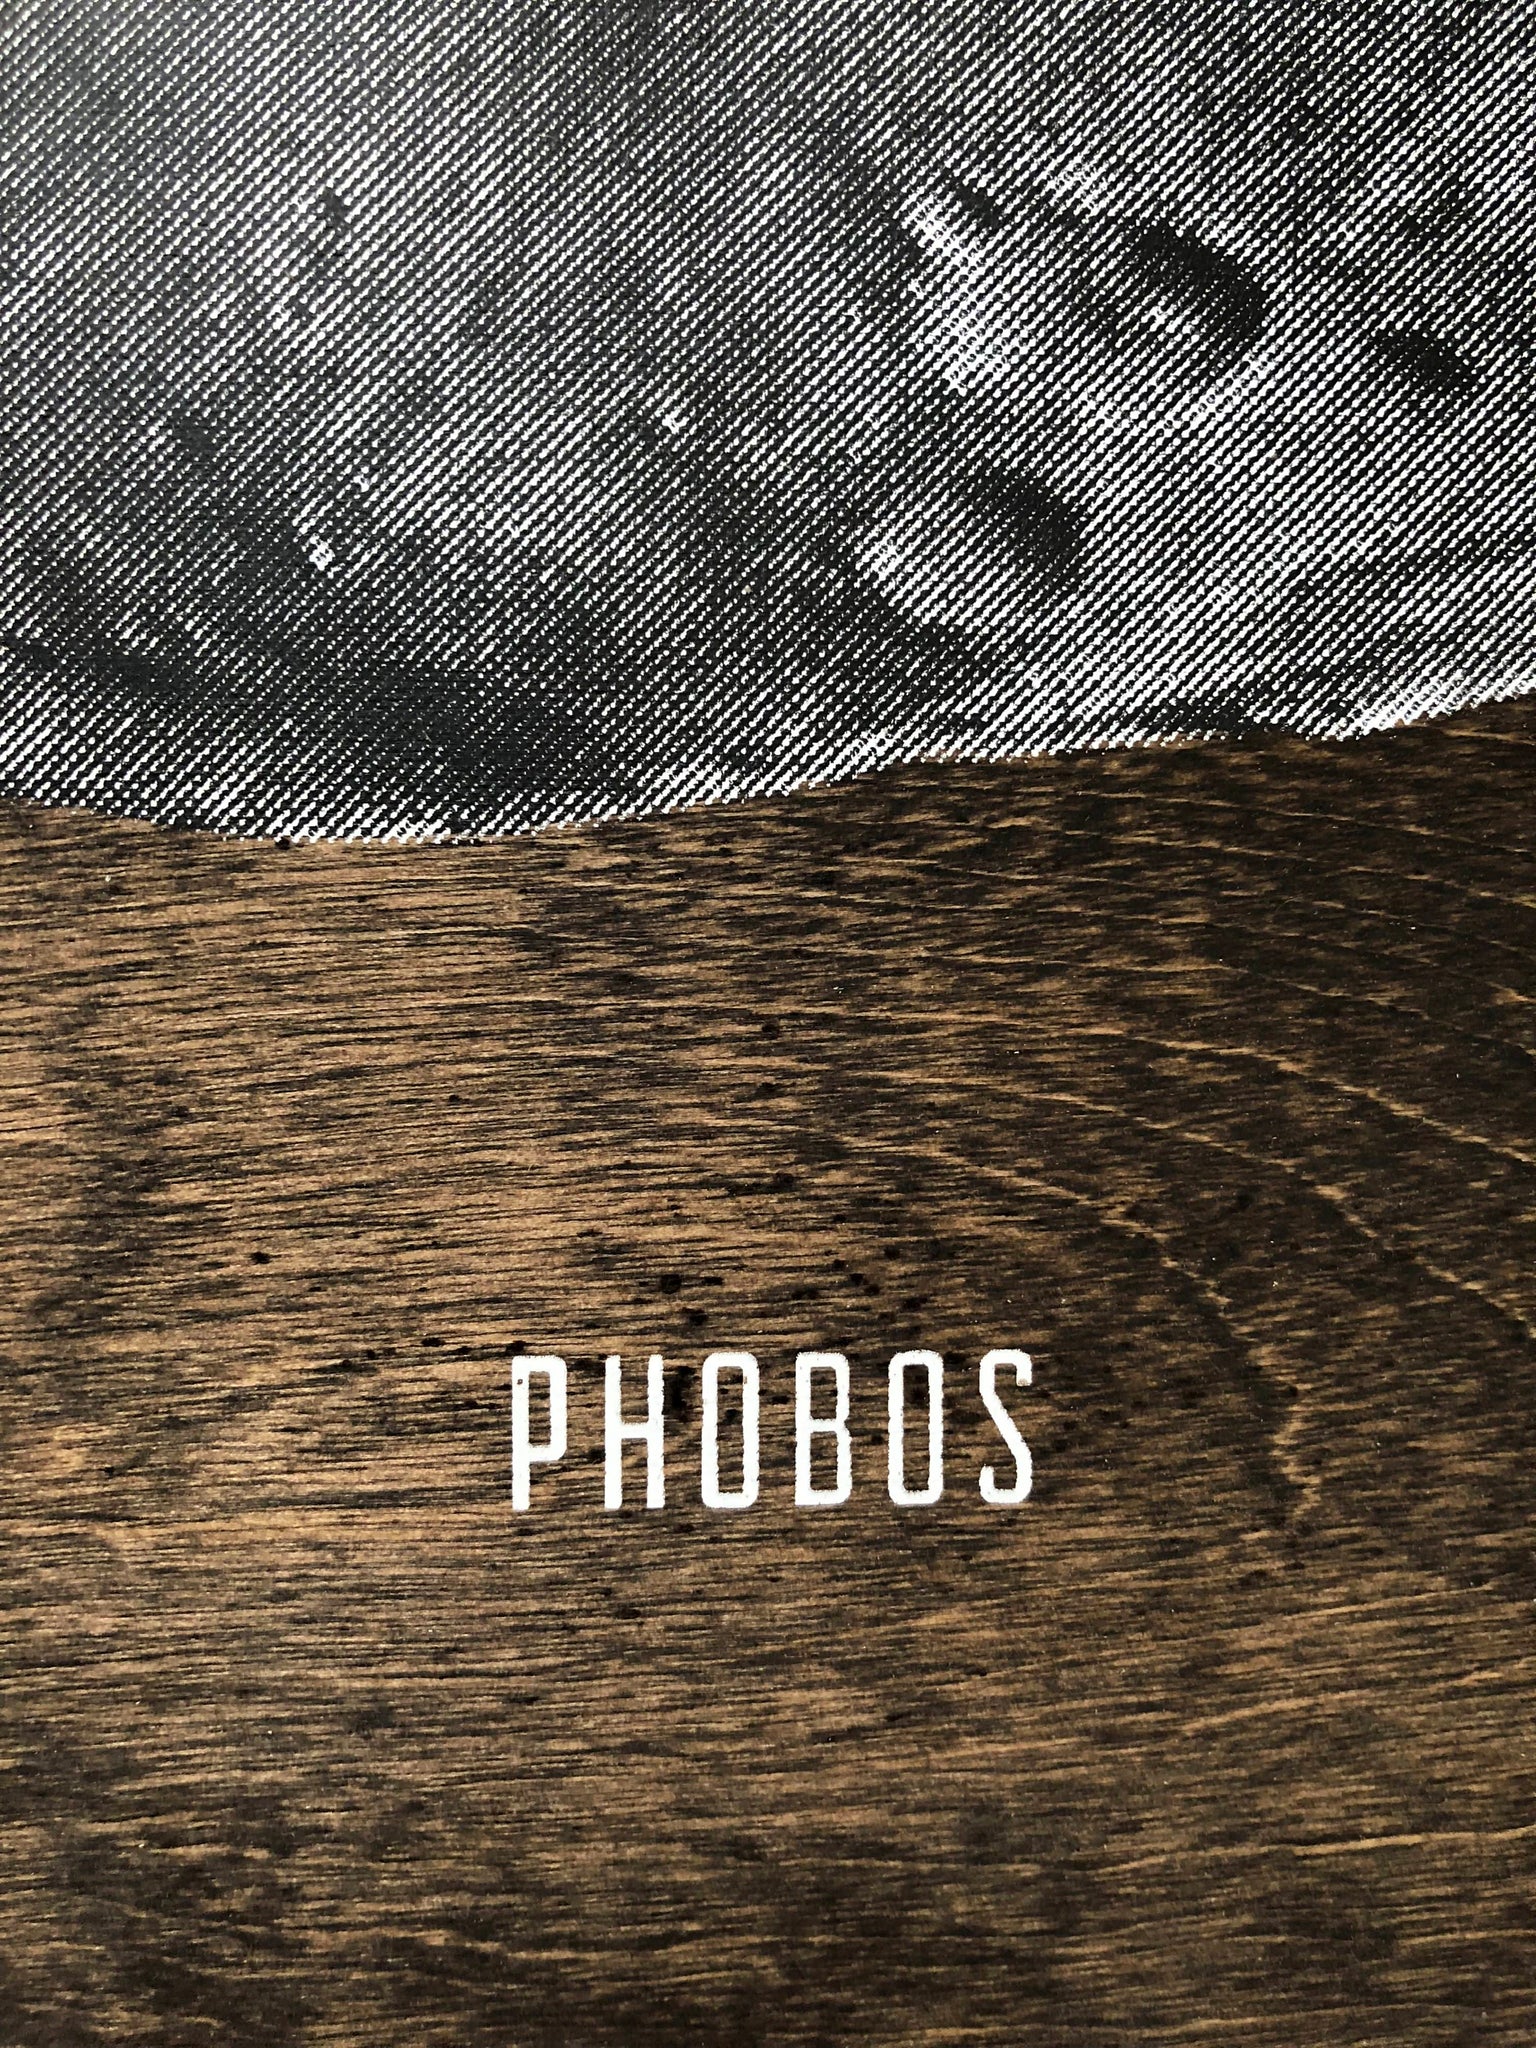 Phobos Print on Wood